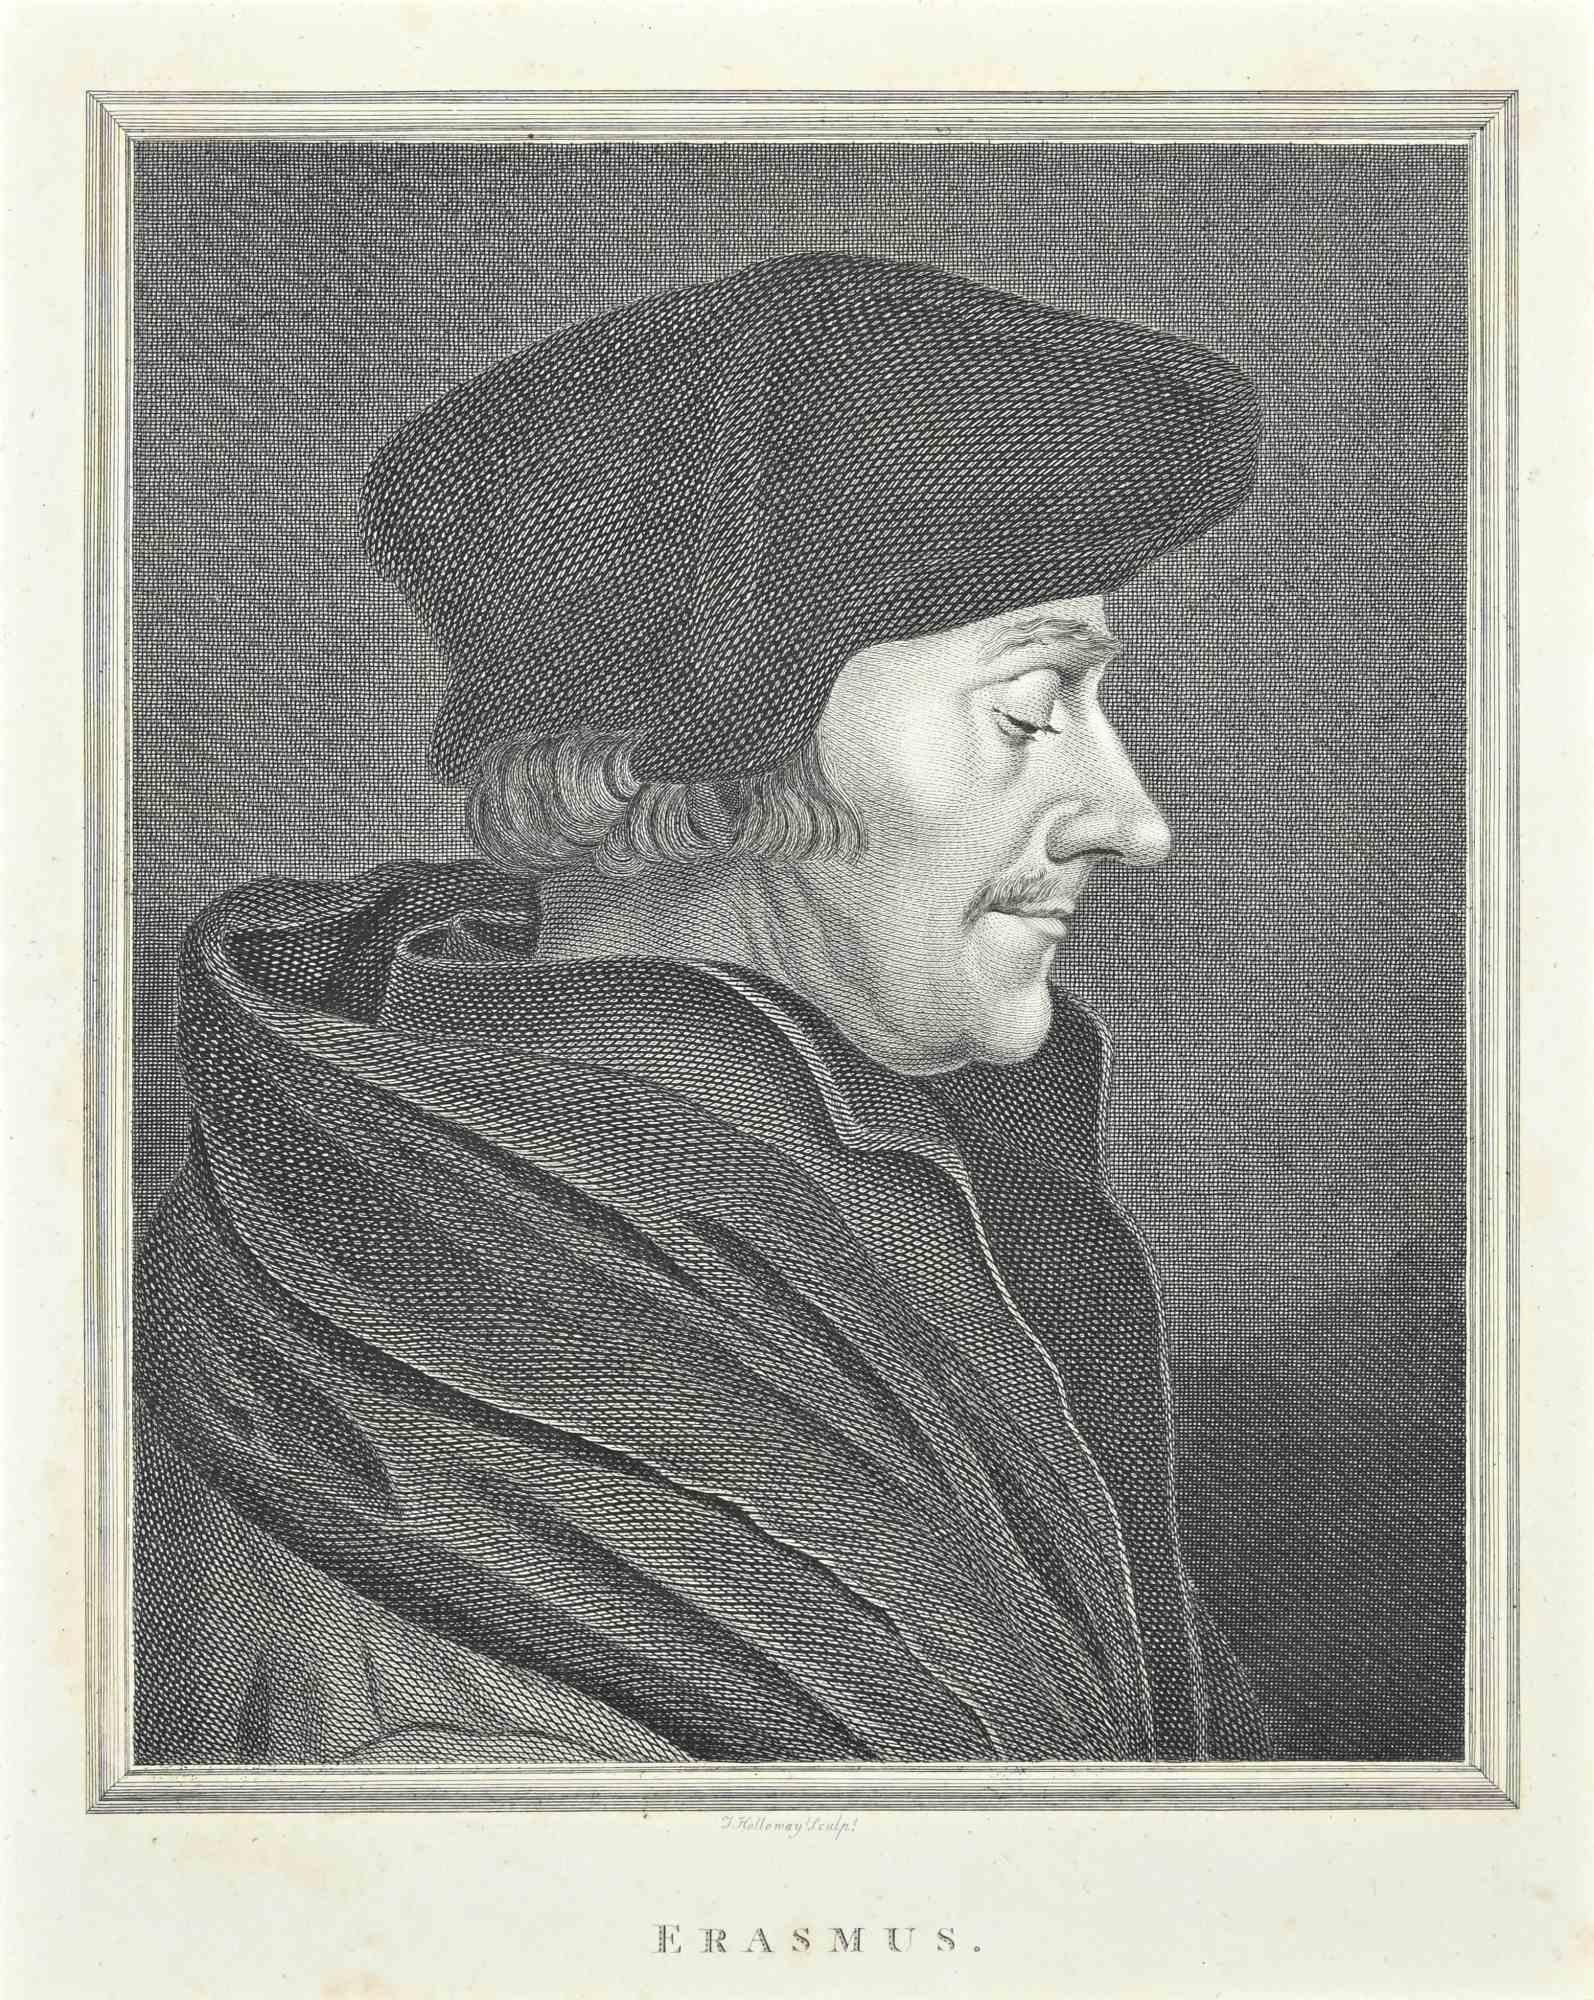 Das Porträt von Erasmus ist eine Original-Radierung von Thomas Holloway für Johann Caspar Lavaters "Essays on Physiognomy, Designed to Promote the Knowledge and the Love of Mankind", London, Bensley, 1810. 

Signiert auf der Platte.

Auf der unteren